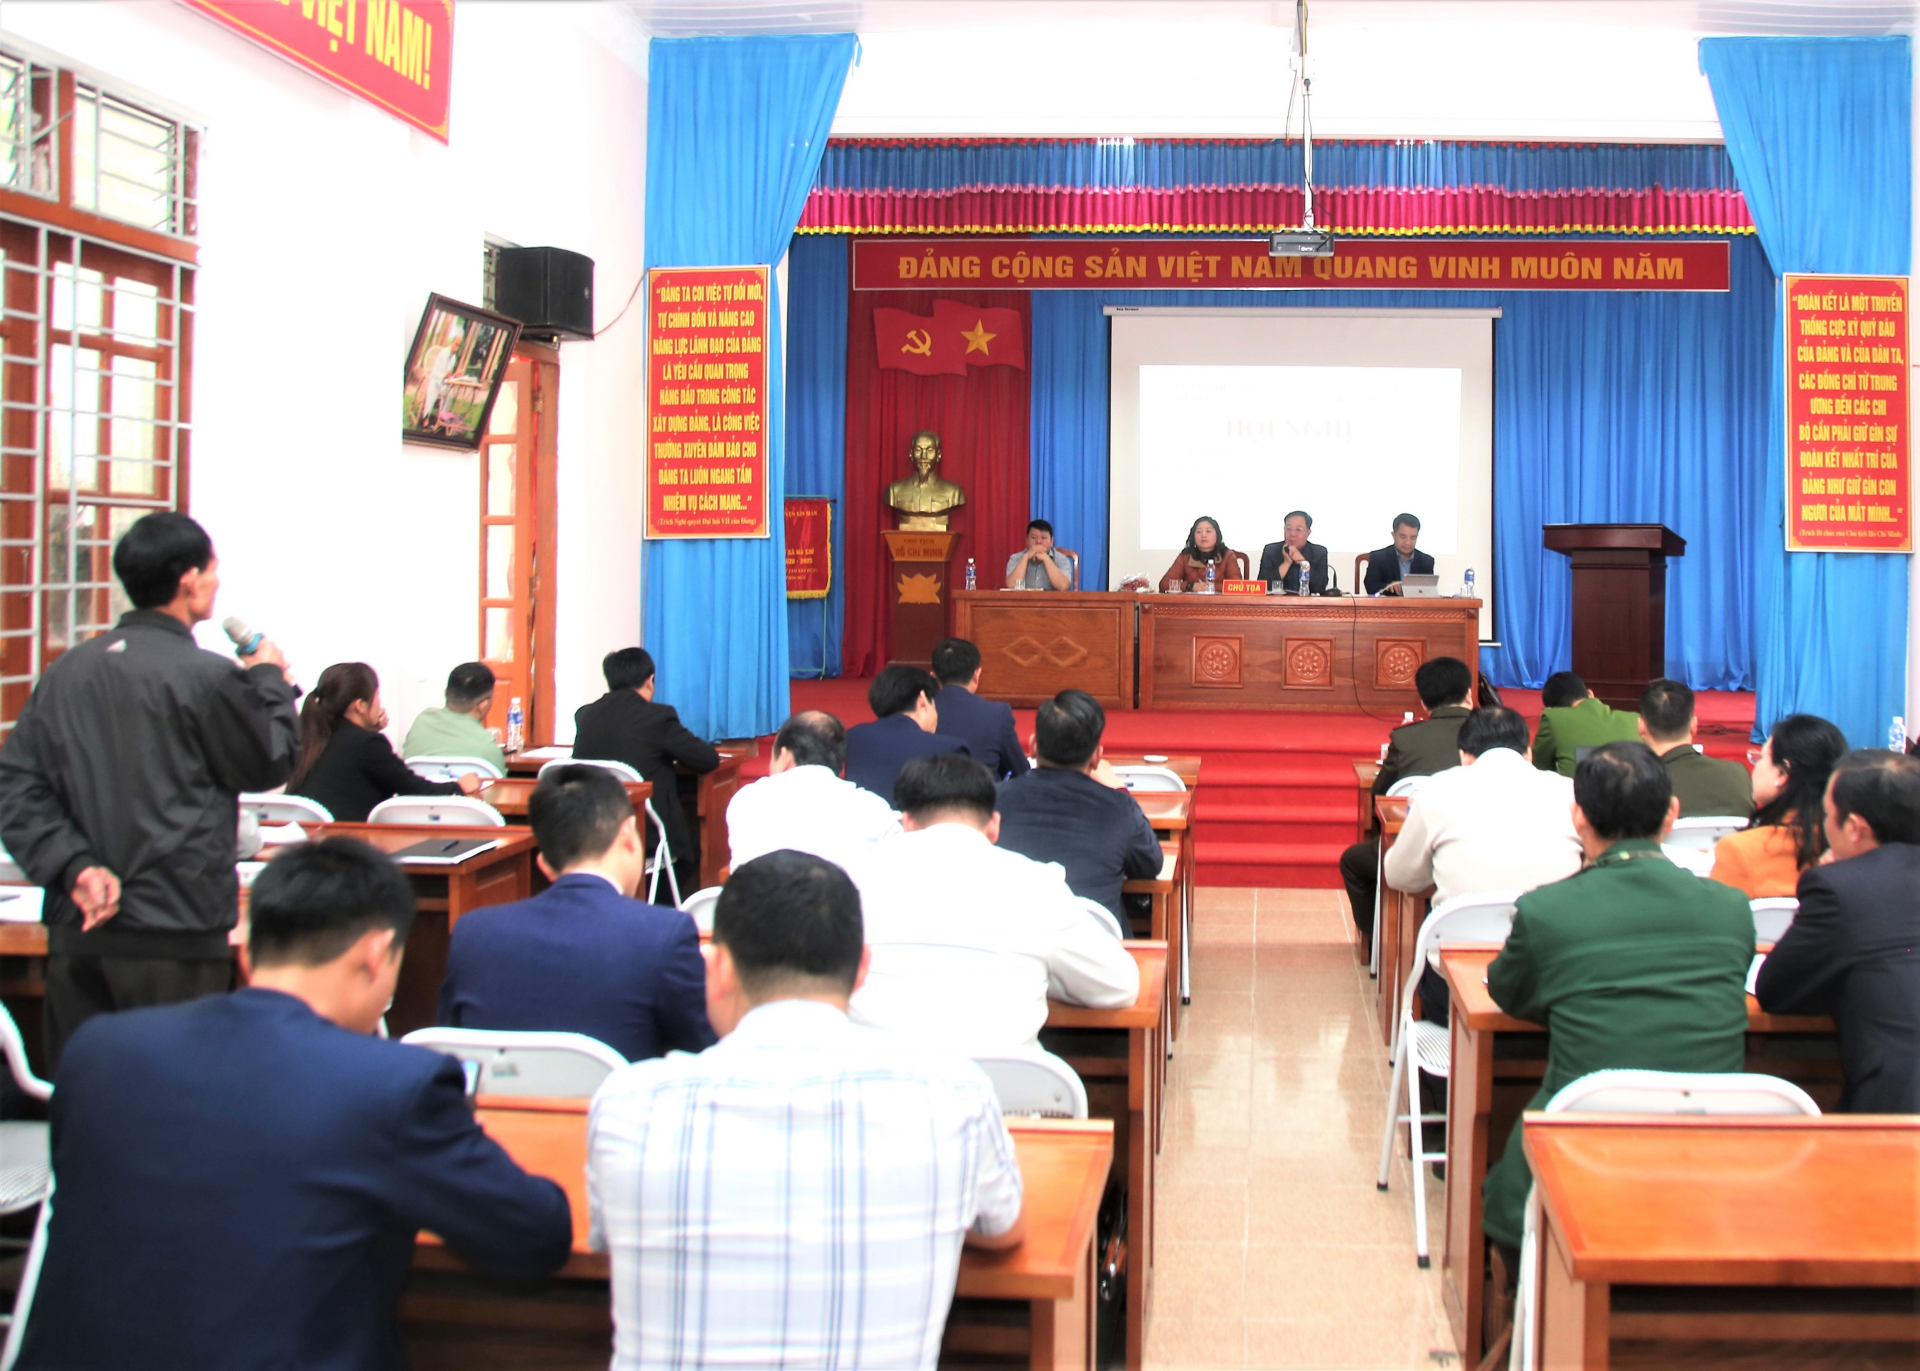 Lãnh đạo huyện Xín Mần, đại diện doanh nghiệp đối thoại trực tiếp với người dân trong vùng triển khai dự án cây măng tre Bát độ.